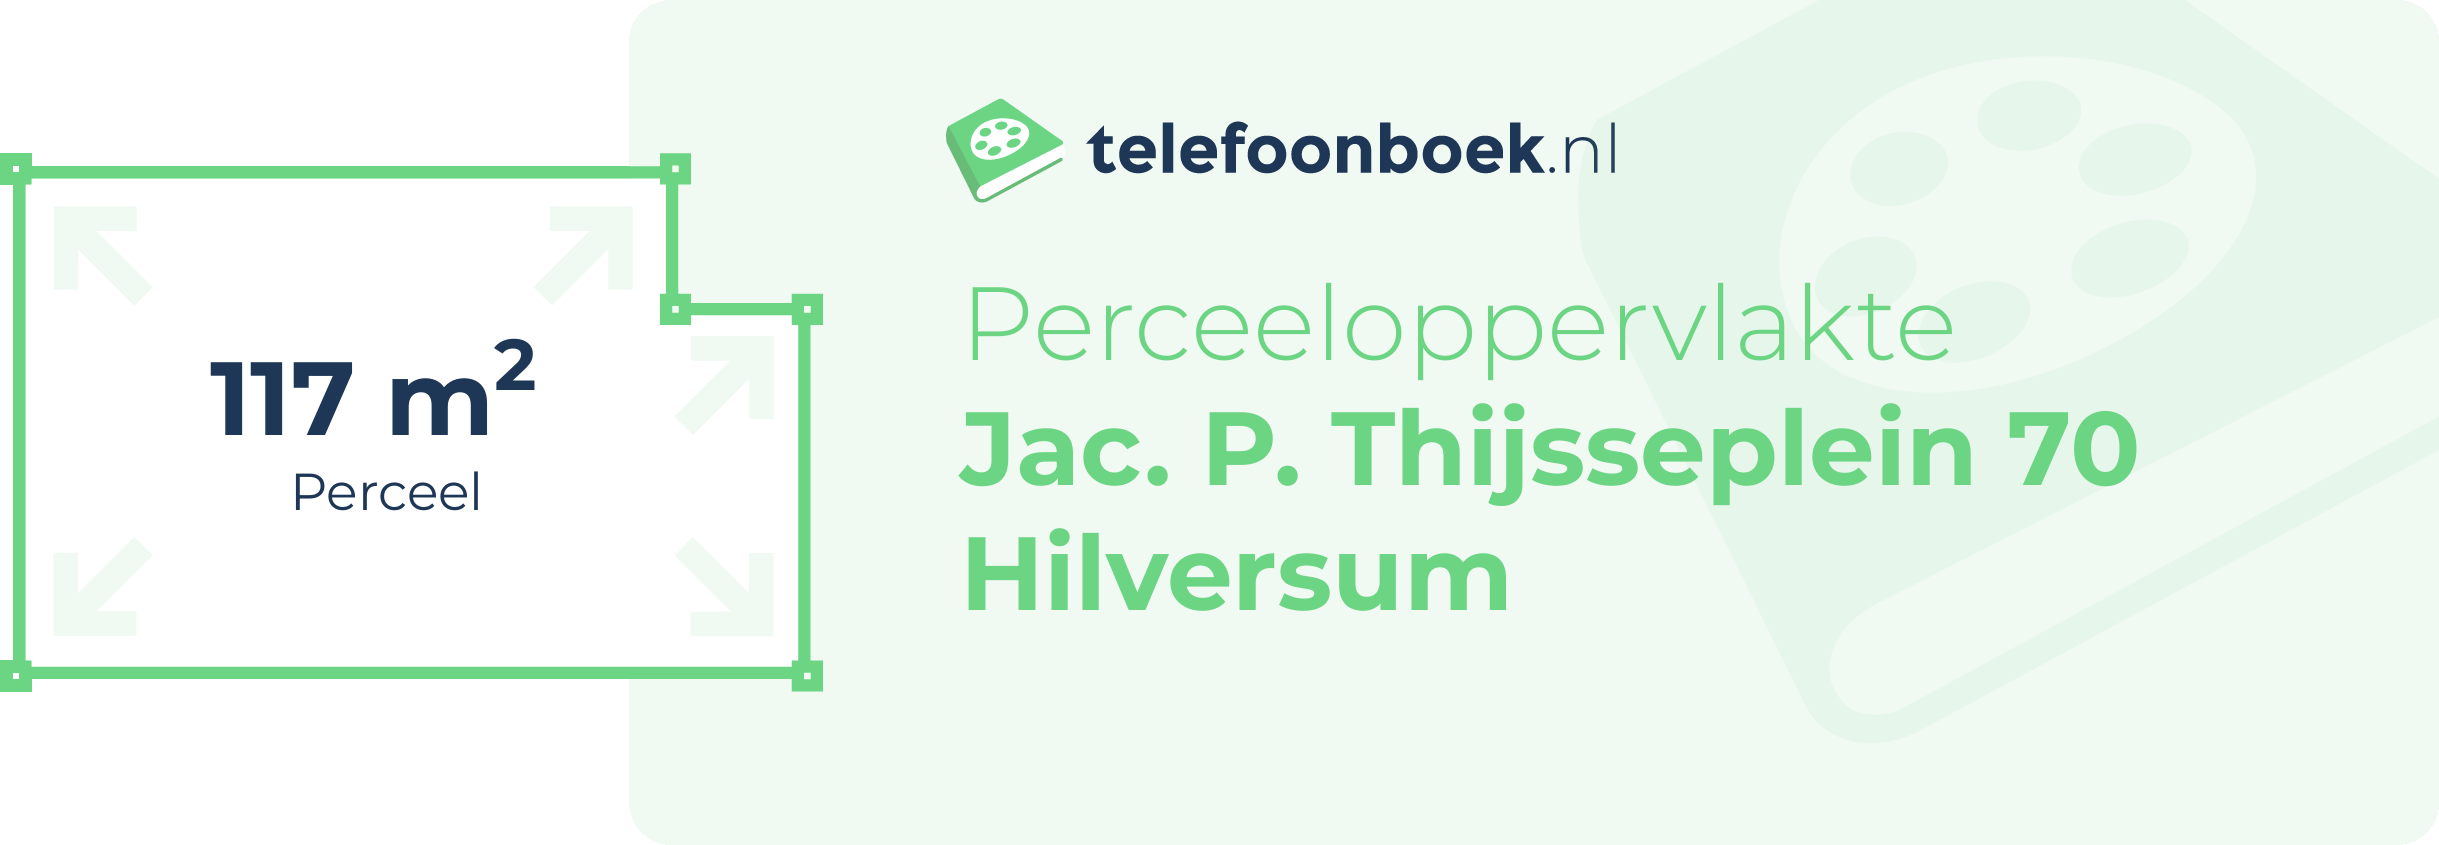 Perceeloppervlakte Jac. P. Thijsseplein 70 Hilversum